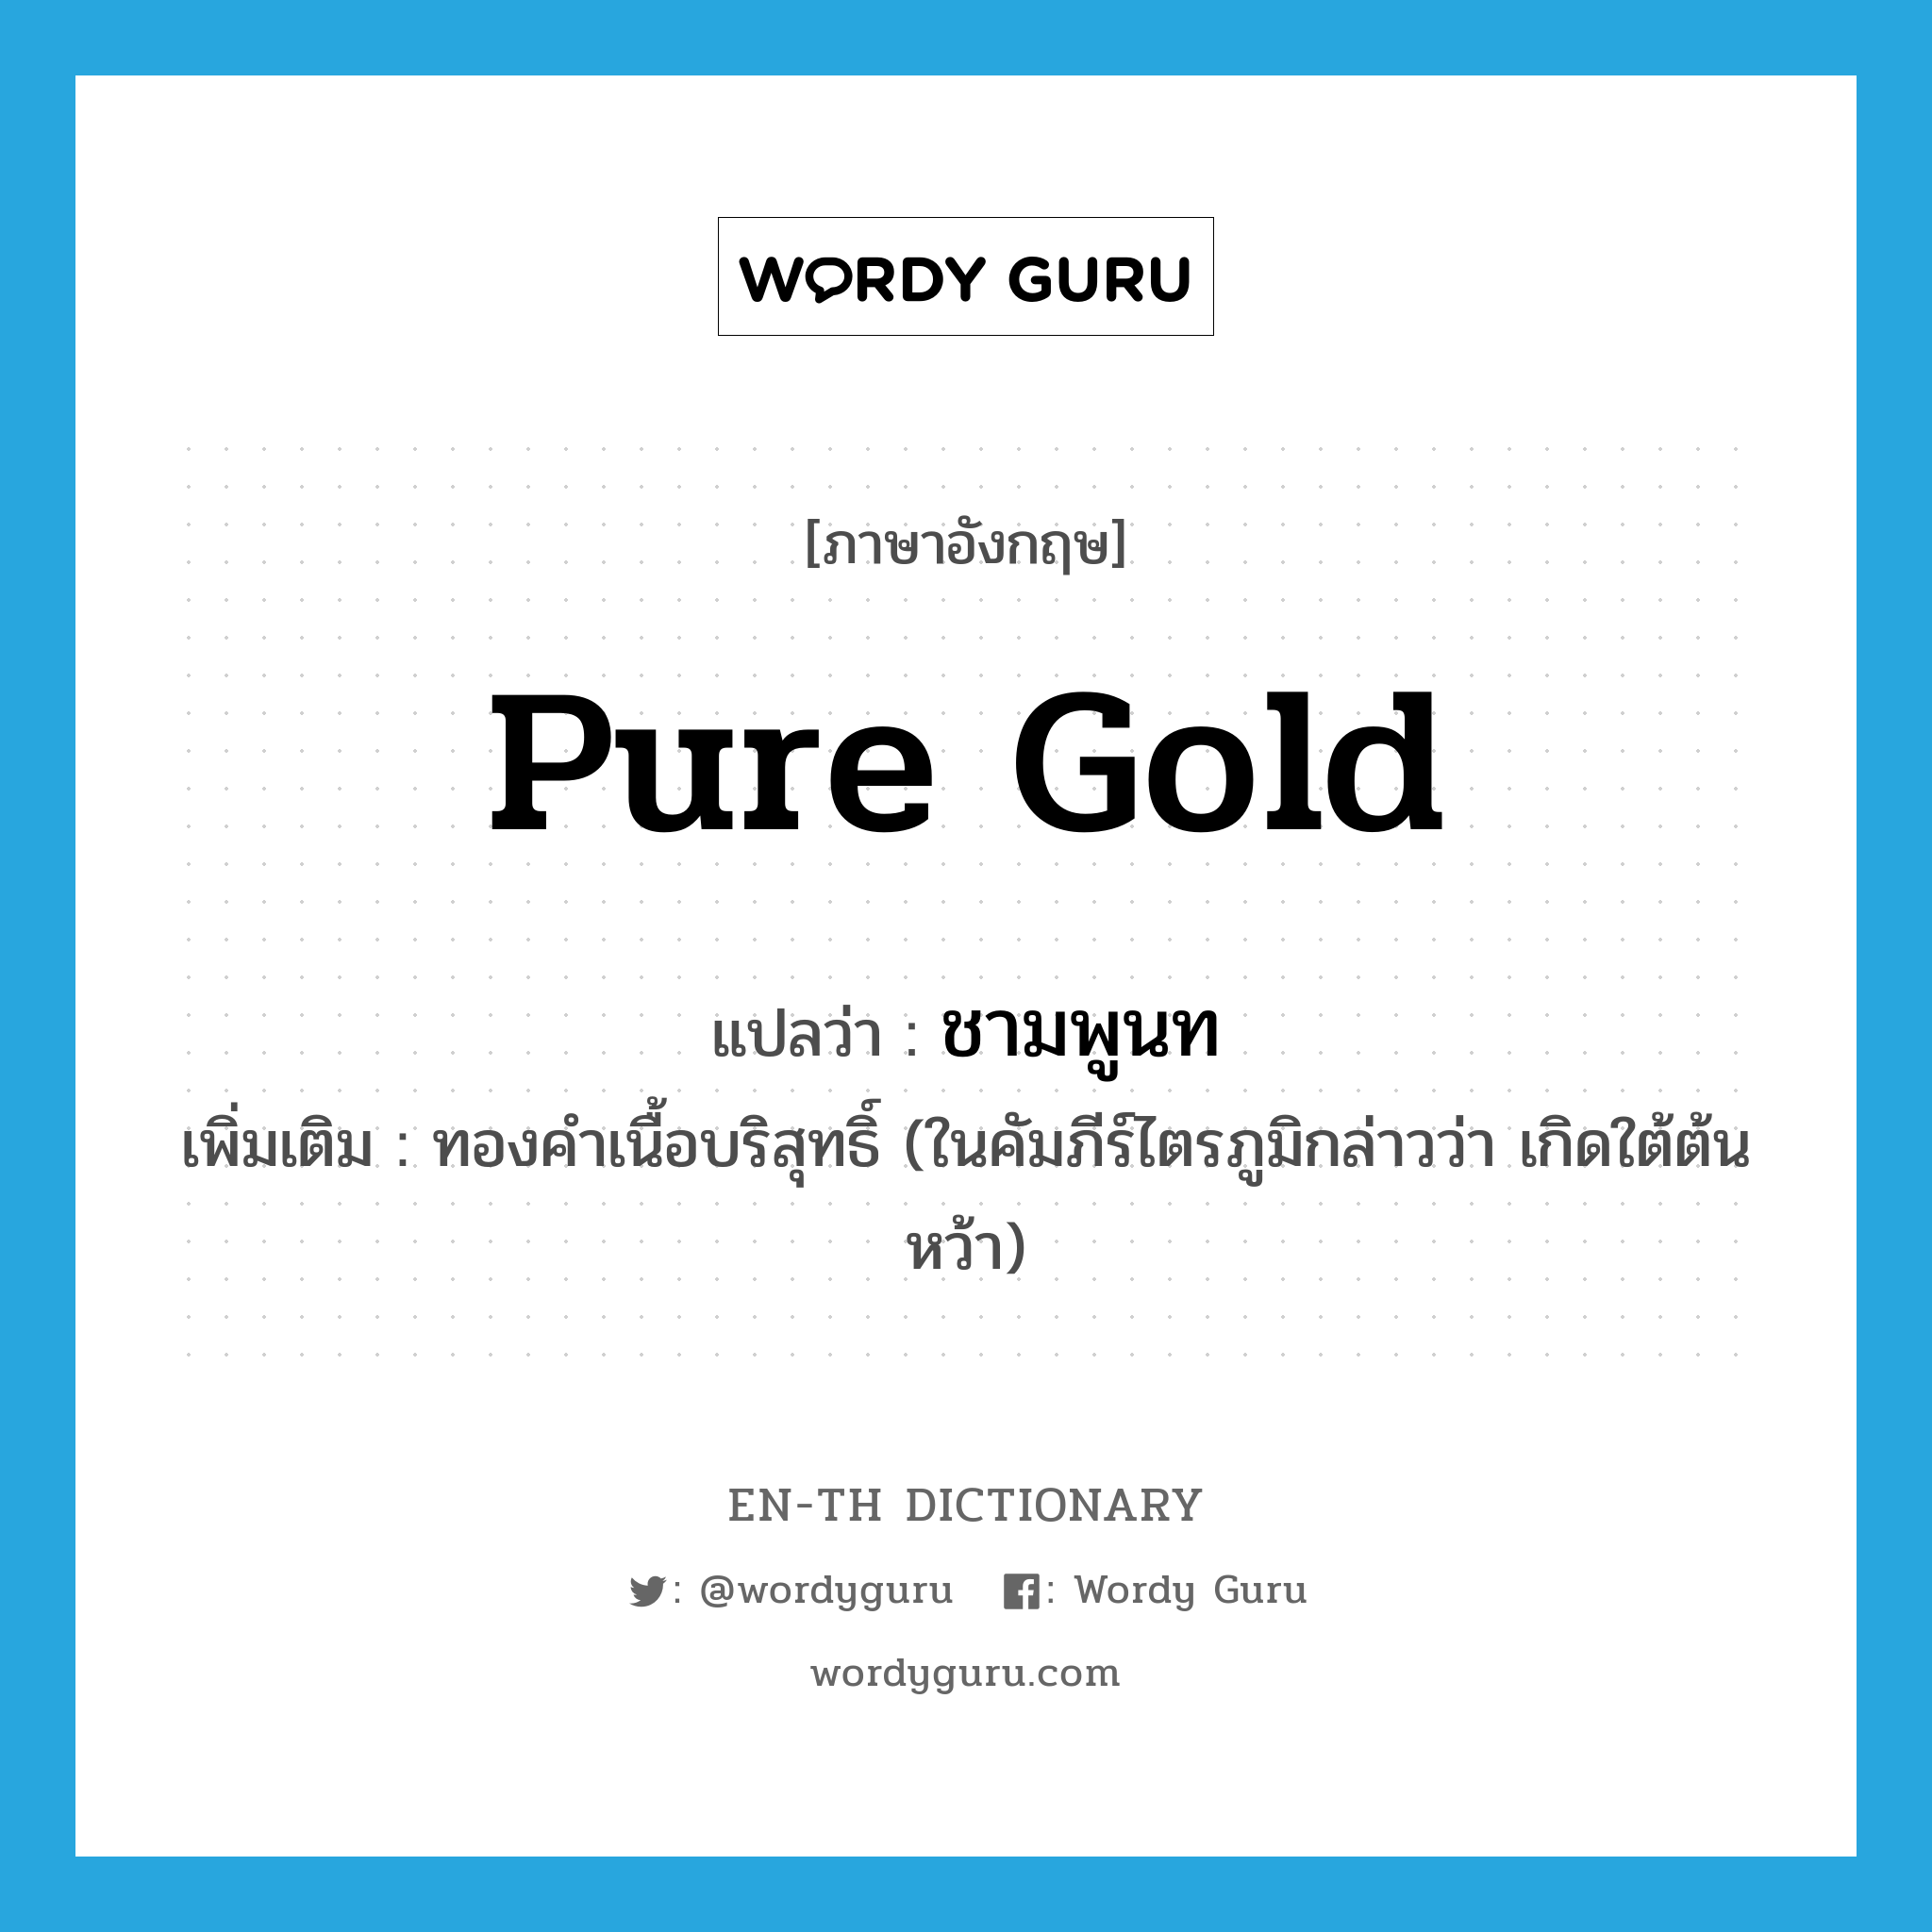 pure gold แปลว่า?, คำศัพท์ภาษาอังกฤษ pure gold แปลว่า ชามพูนท ประเภท N เพิ่มเติม ทองคำเนื้อบริสุทธิ์ (ในคัมภีร์ไตรภูมิกล่าวว่า เกิดใต้ต้นหว้า) หมวด N